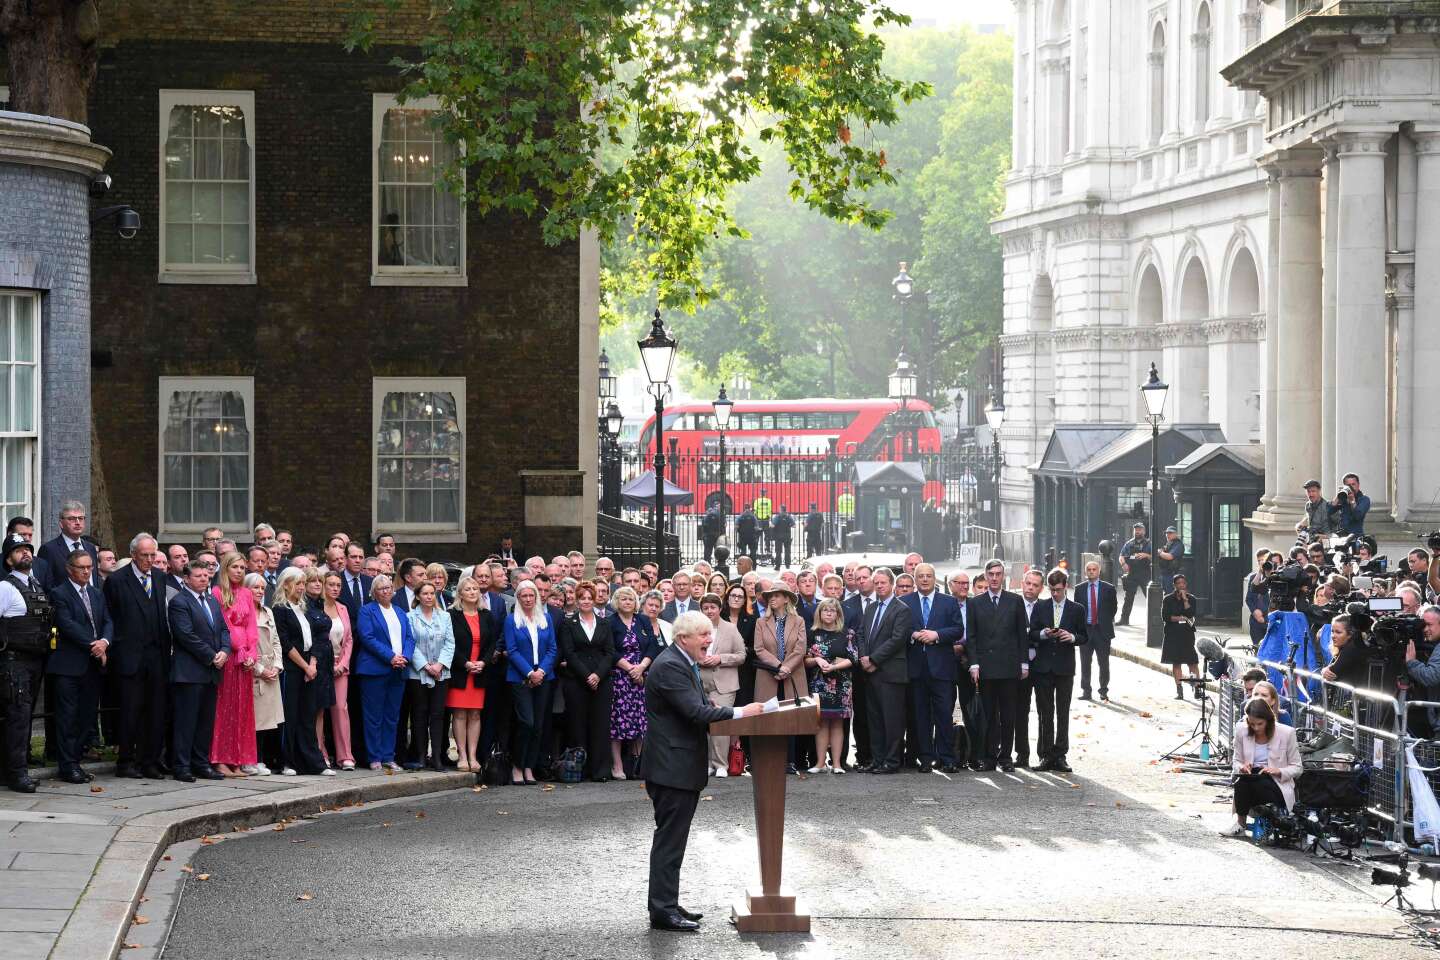 Liz Truss, UK’s new prime minister, has “strong” backing from Boris Johnson